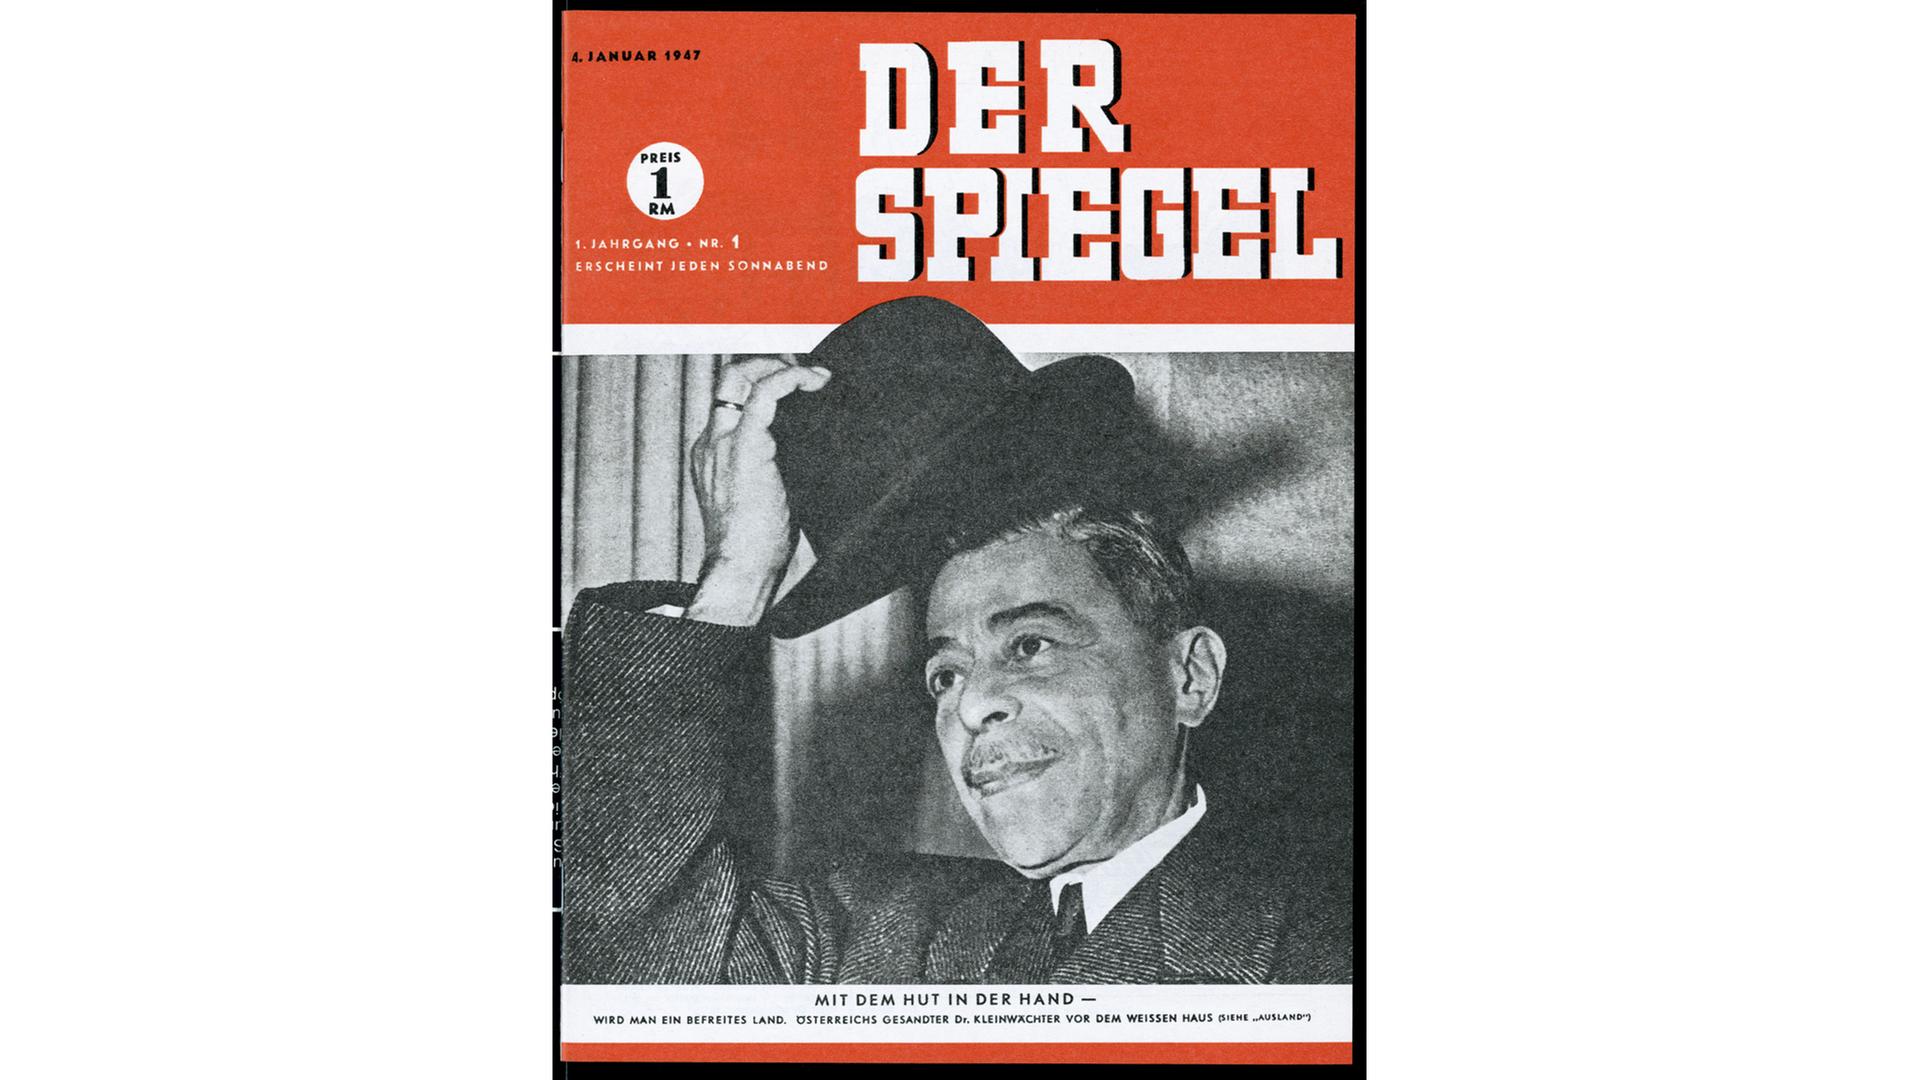 Das Cover der ersten Ausgabe des "SPIEGEL" am 4.1.1947